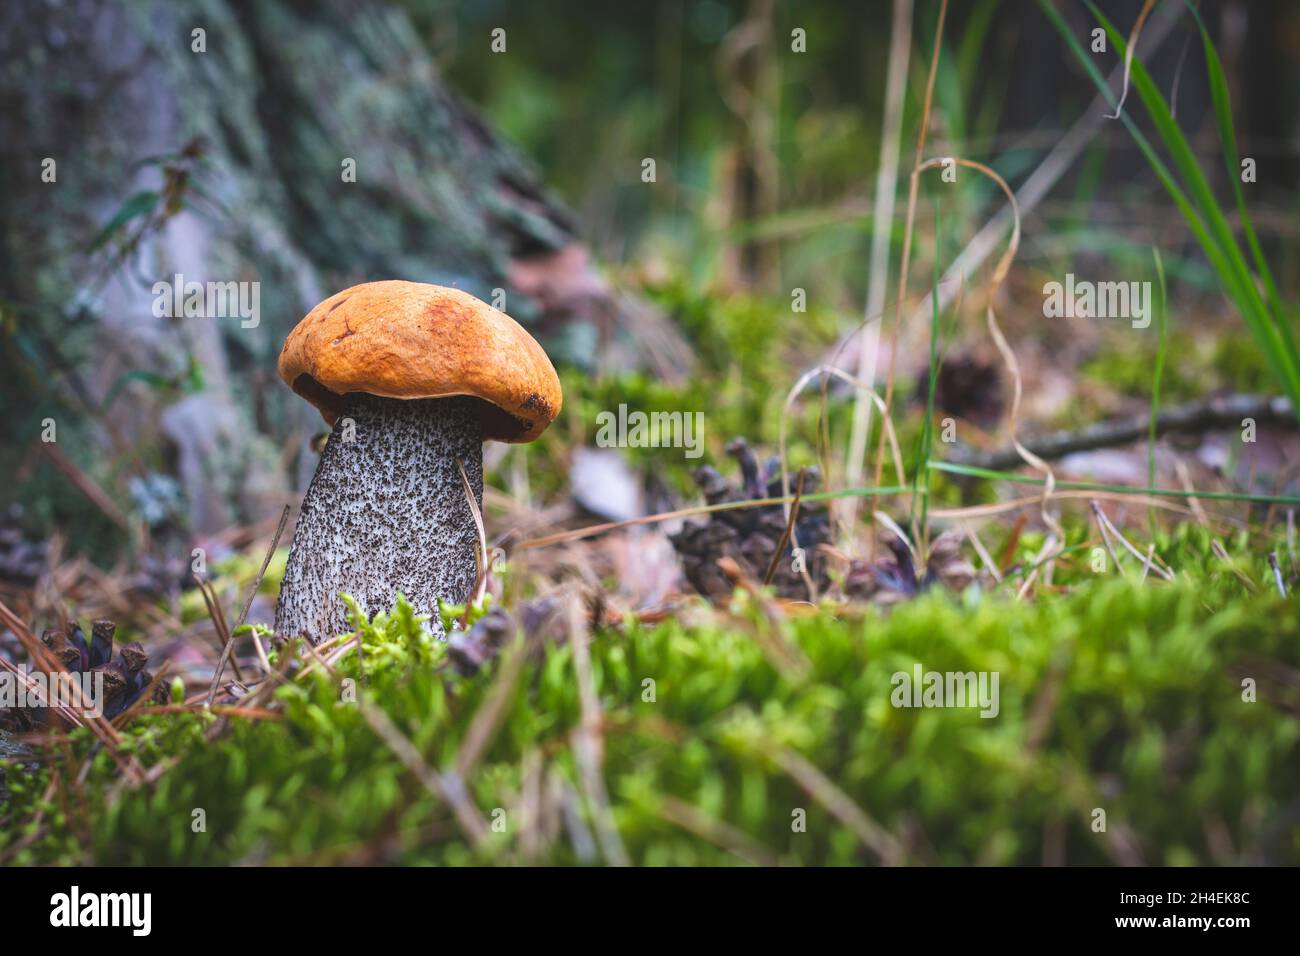 Il fungo del boleto edulis cresce in muschio. Funghi a cappuccio arancione in legno Foto Stock